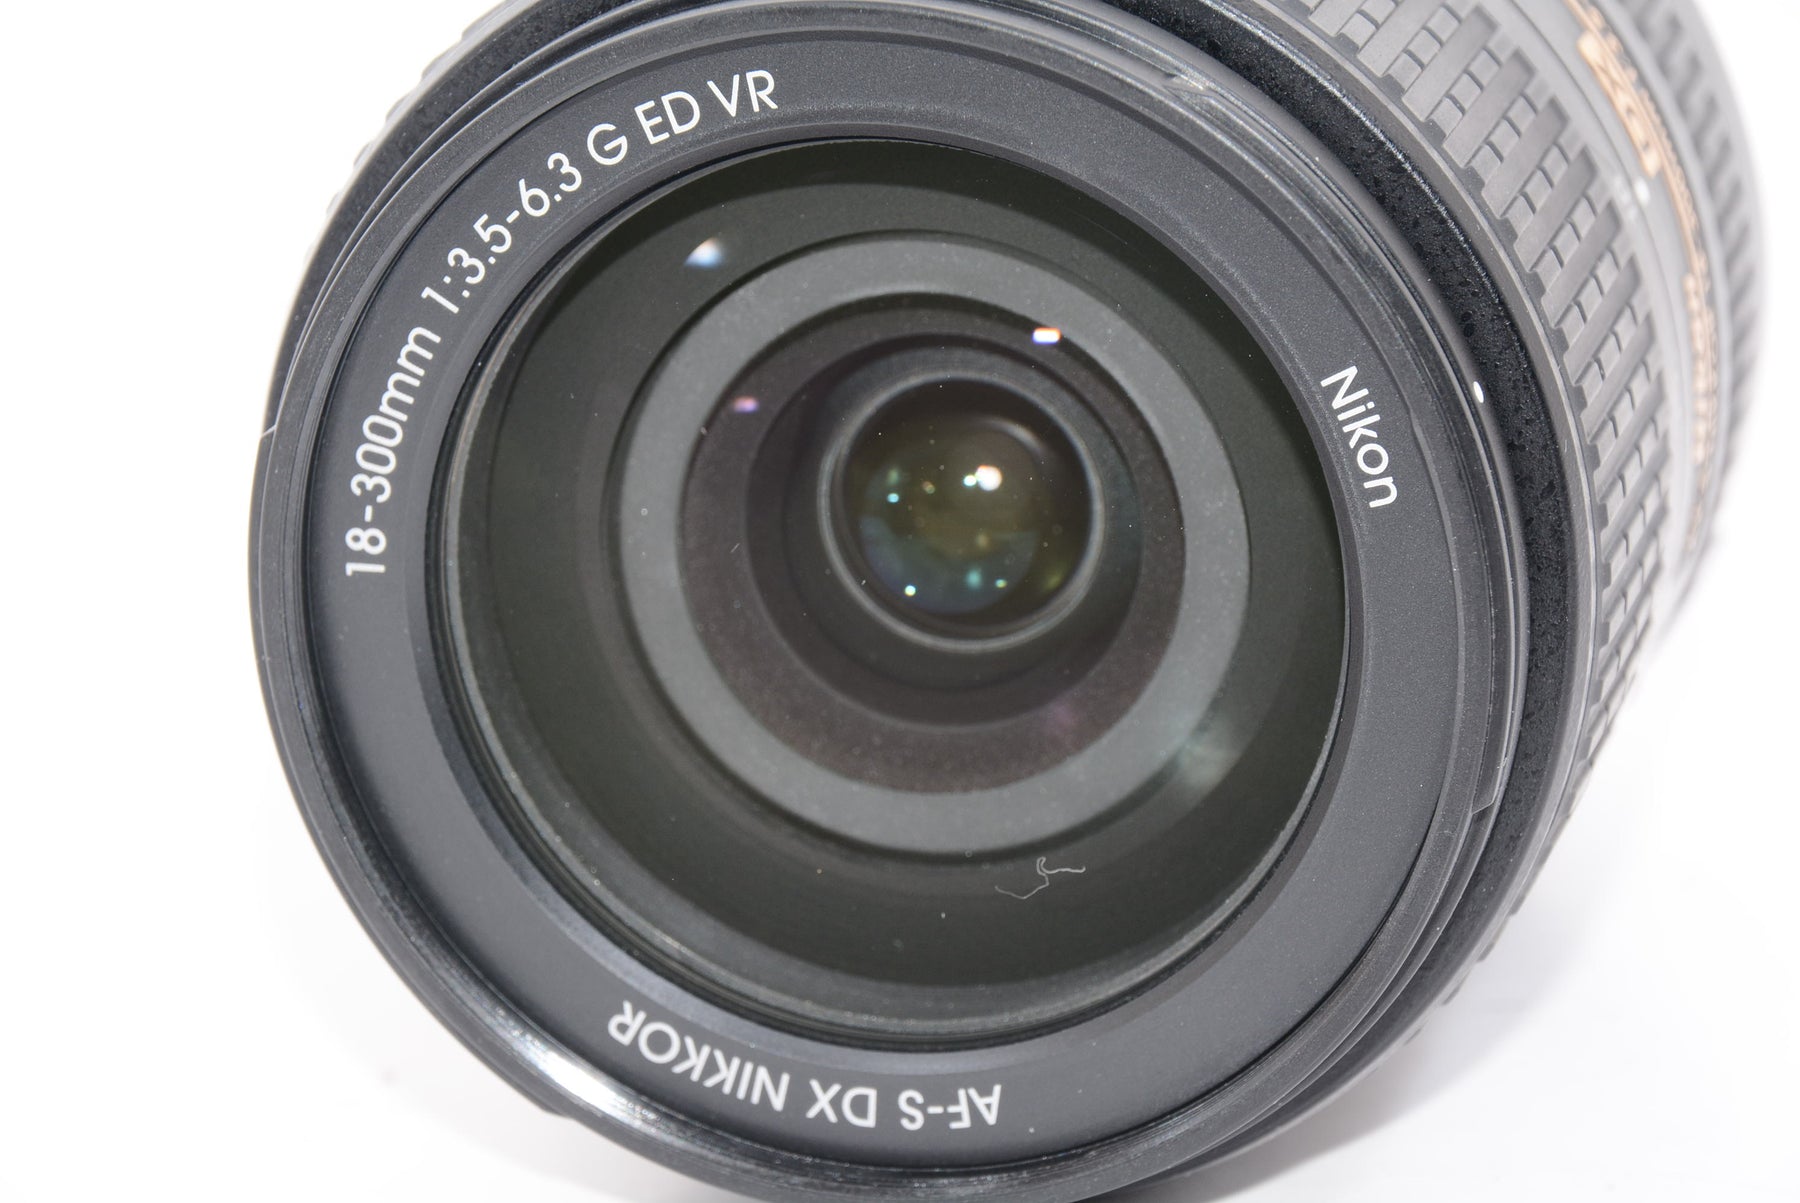 外観特上級】Nikon 高倍率ズームレンズ AF-S DX NIKKOR 18-300mm f/3.5